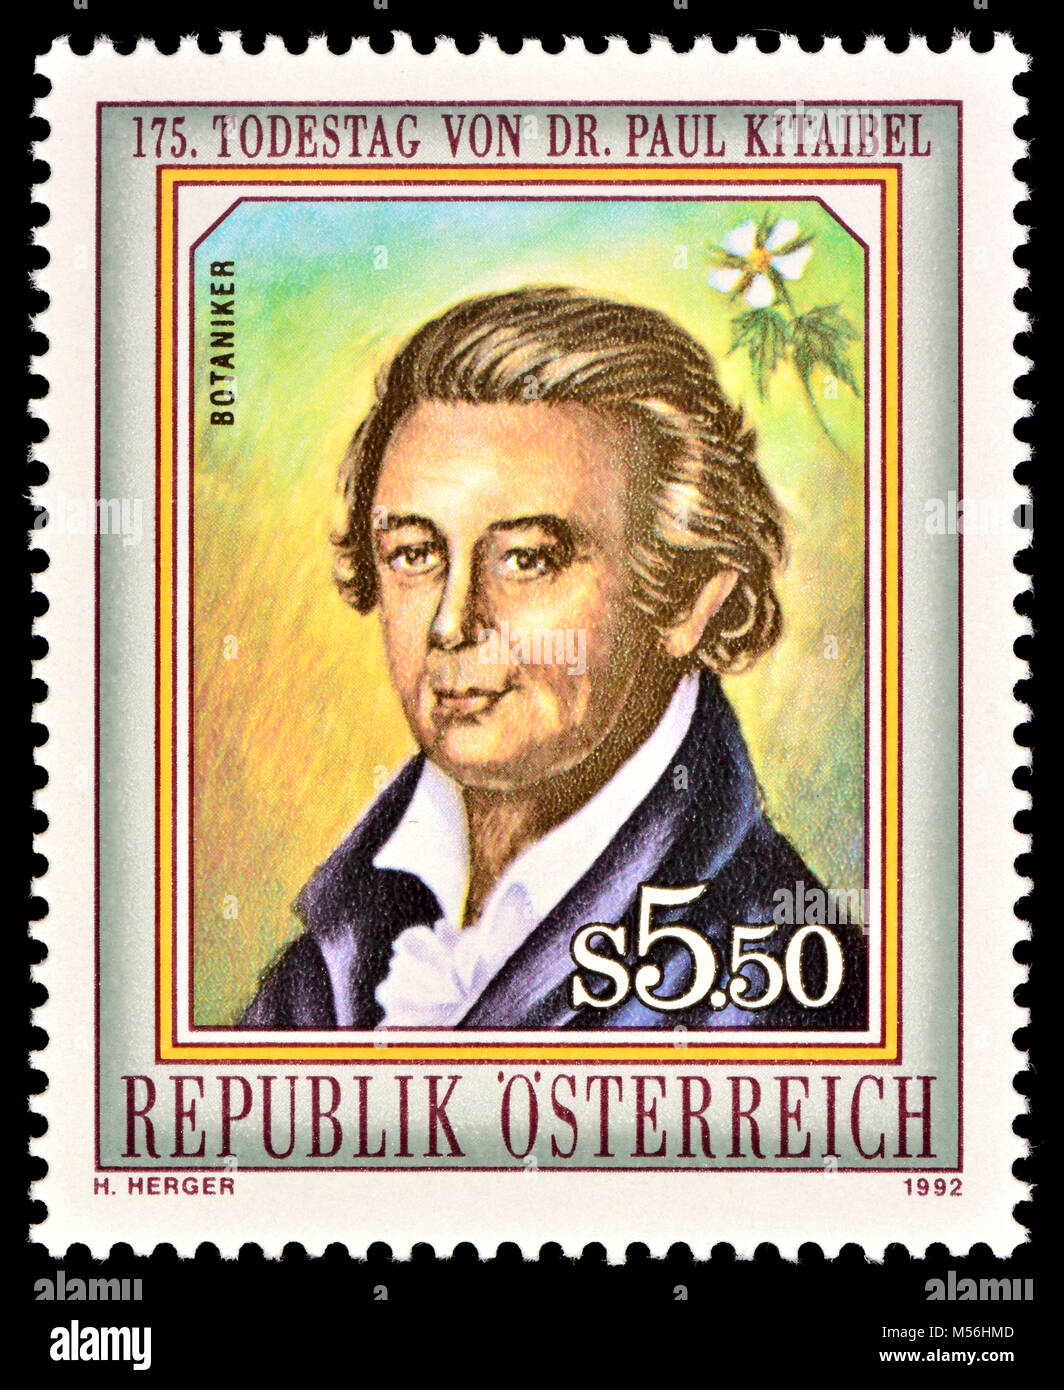 Österreichische Briefmarke (1992): Pál Kitaibel (Paul) (1757-1817) ungarischer Botaniker und Chemiker. Stockfoto